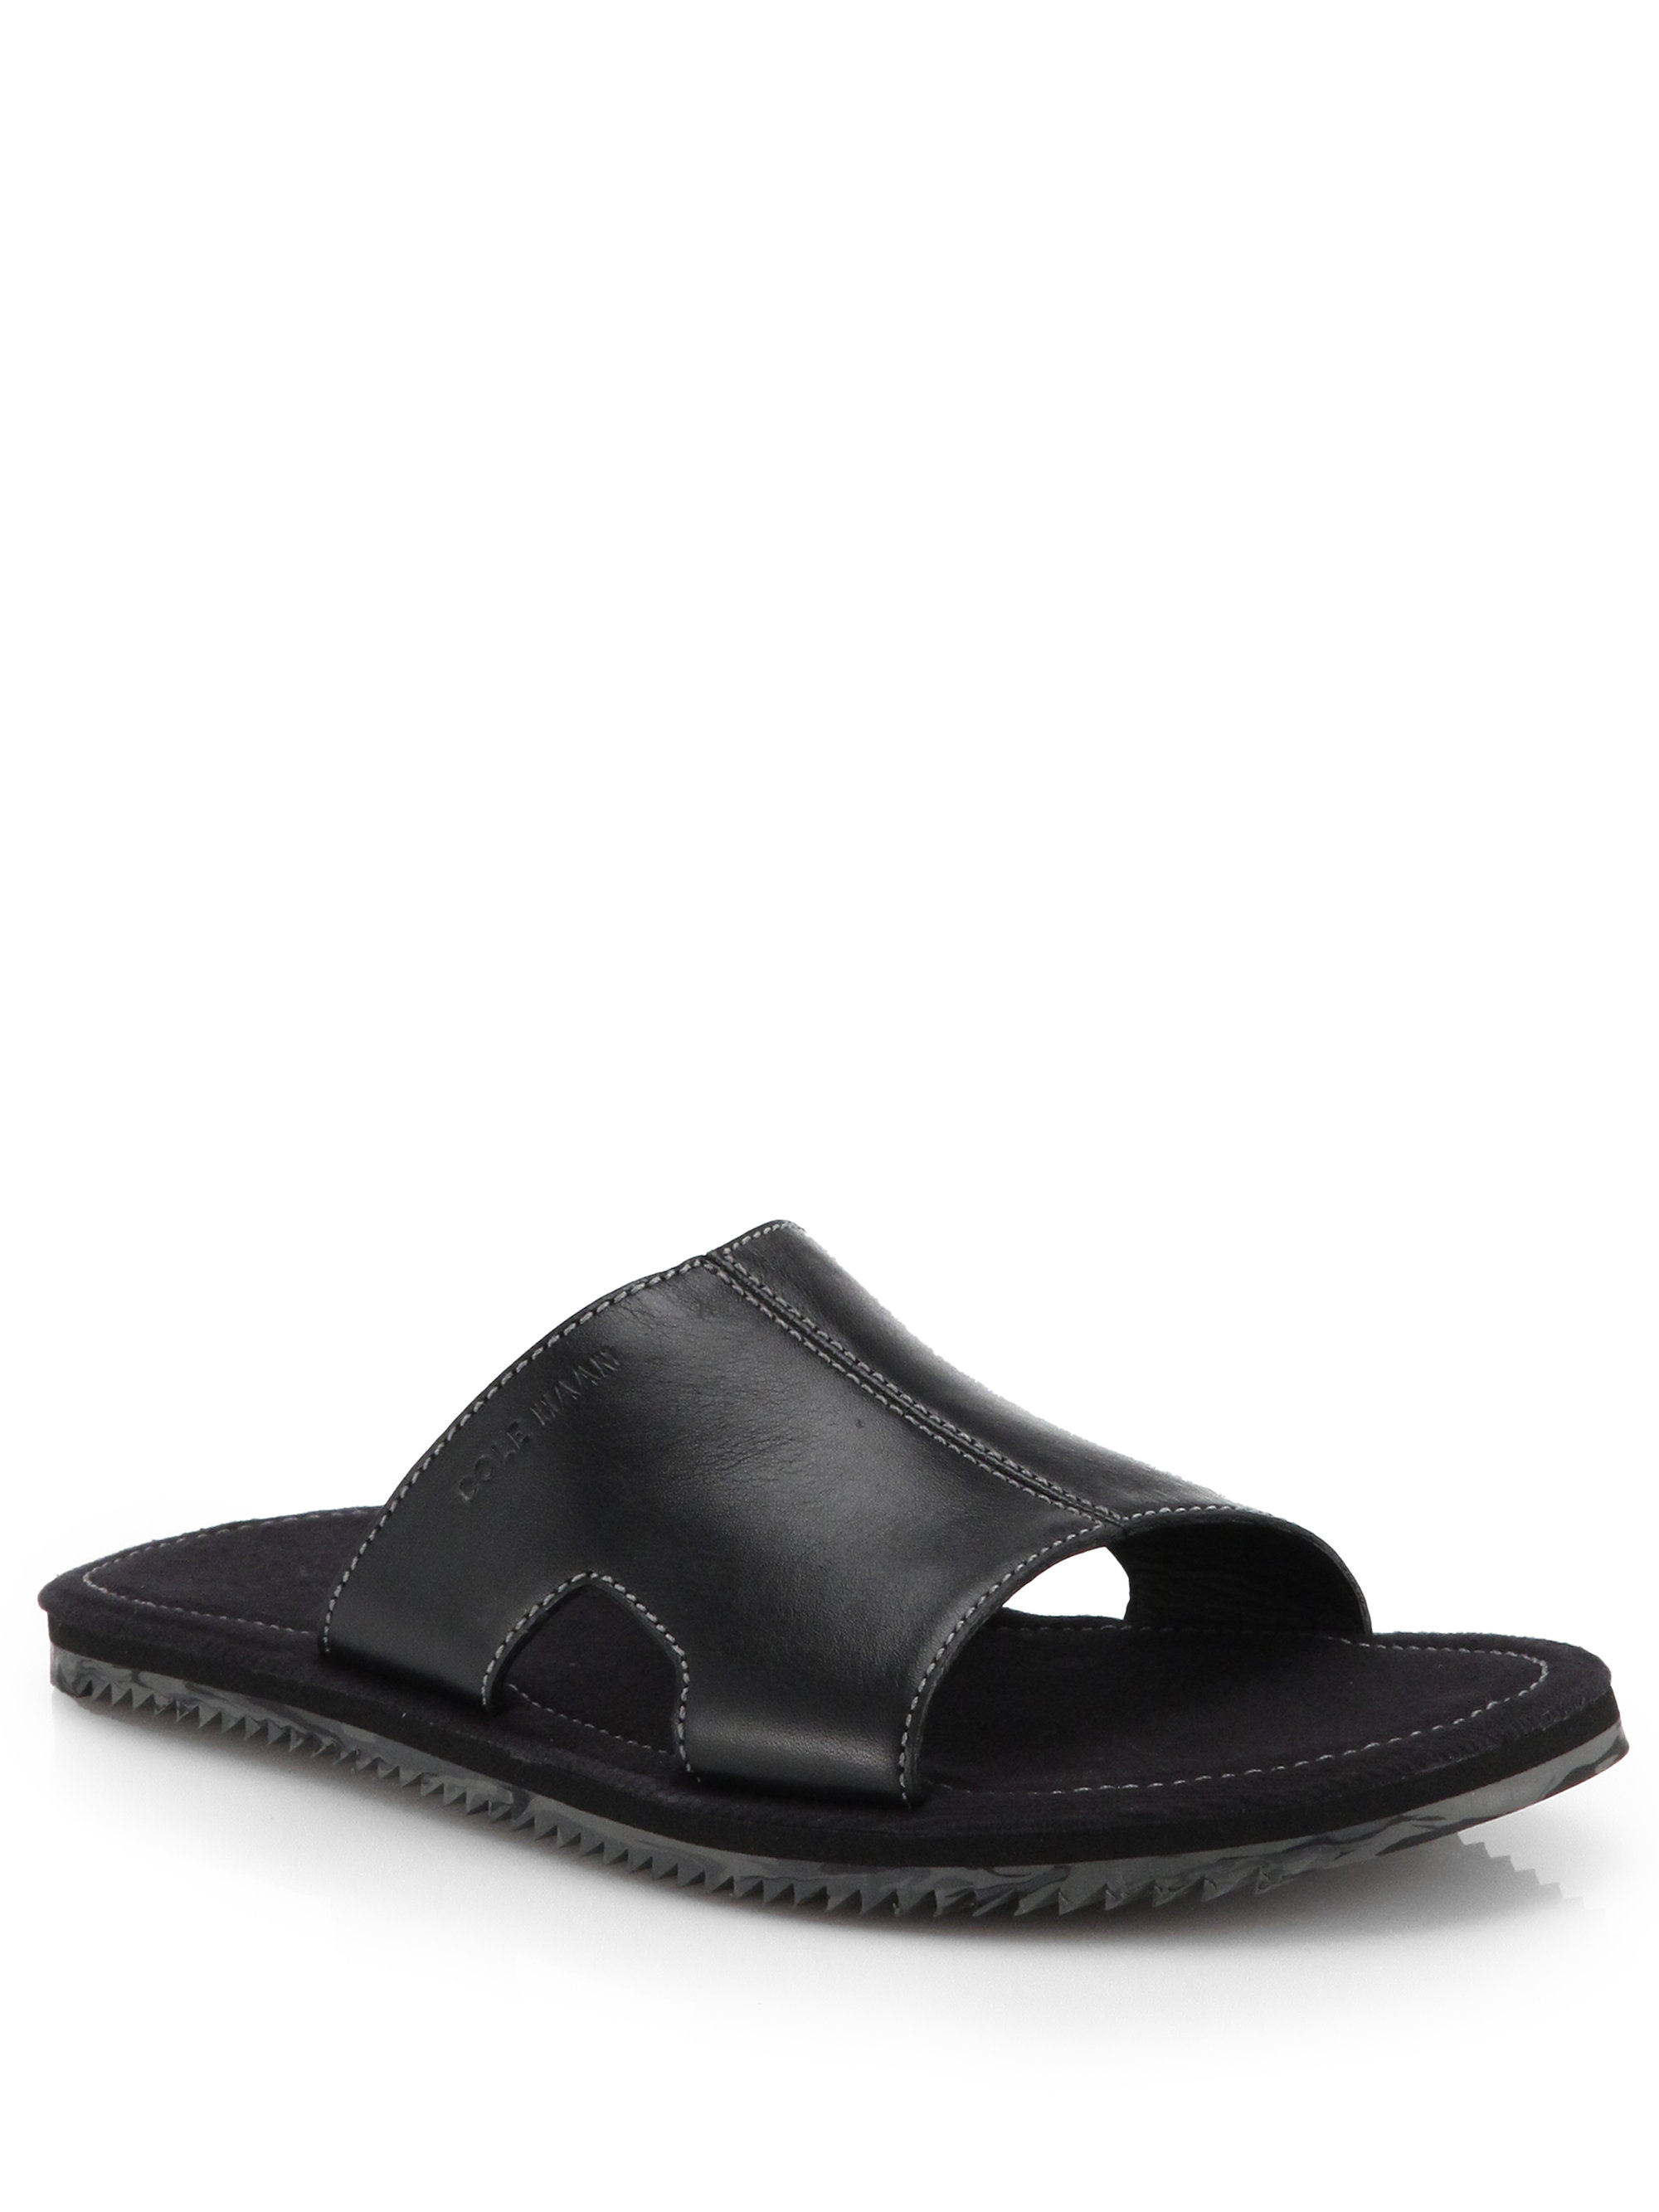 Lyst - Cole Haan Meyer Slide Sandals in Black for Men